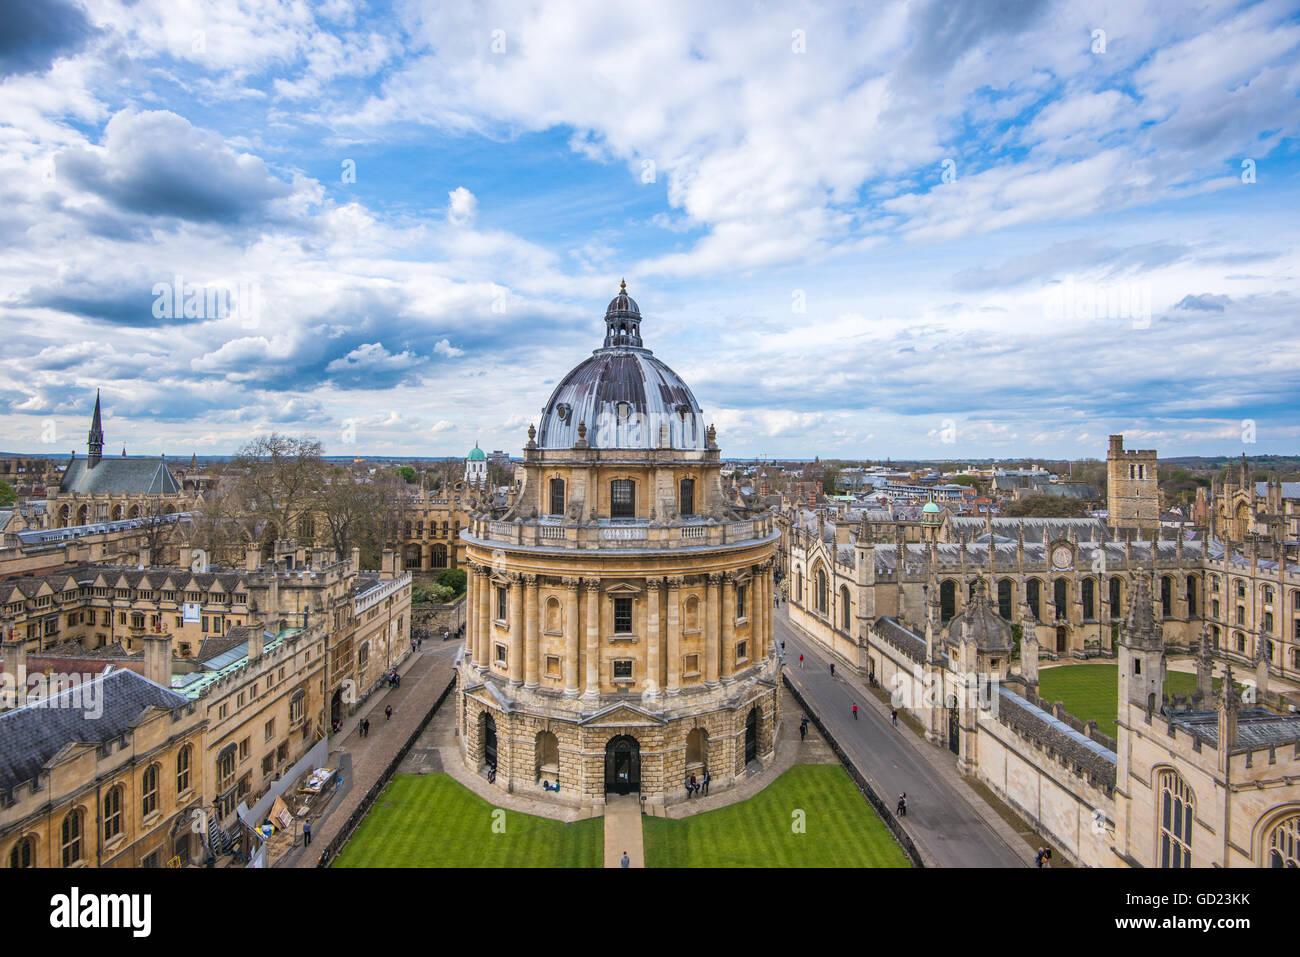 Radcliffe Camera et la vue d'Oxford à partir de l'église de la Vierge Marie, Oxford, Oxfordshire, Angleterre, Royaume-Uni, Europe Banque D'Images